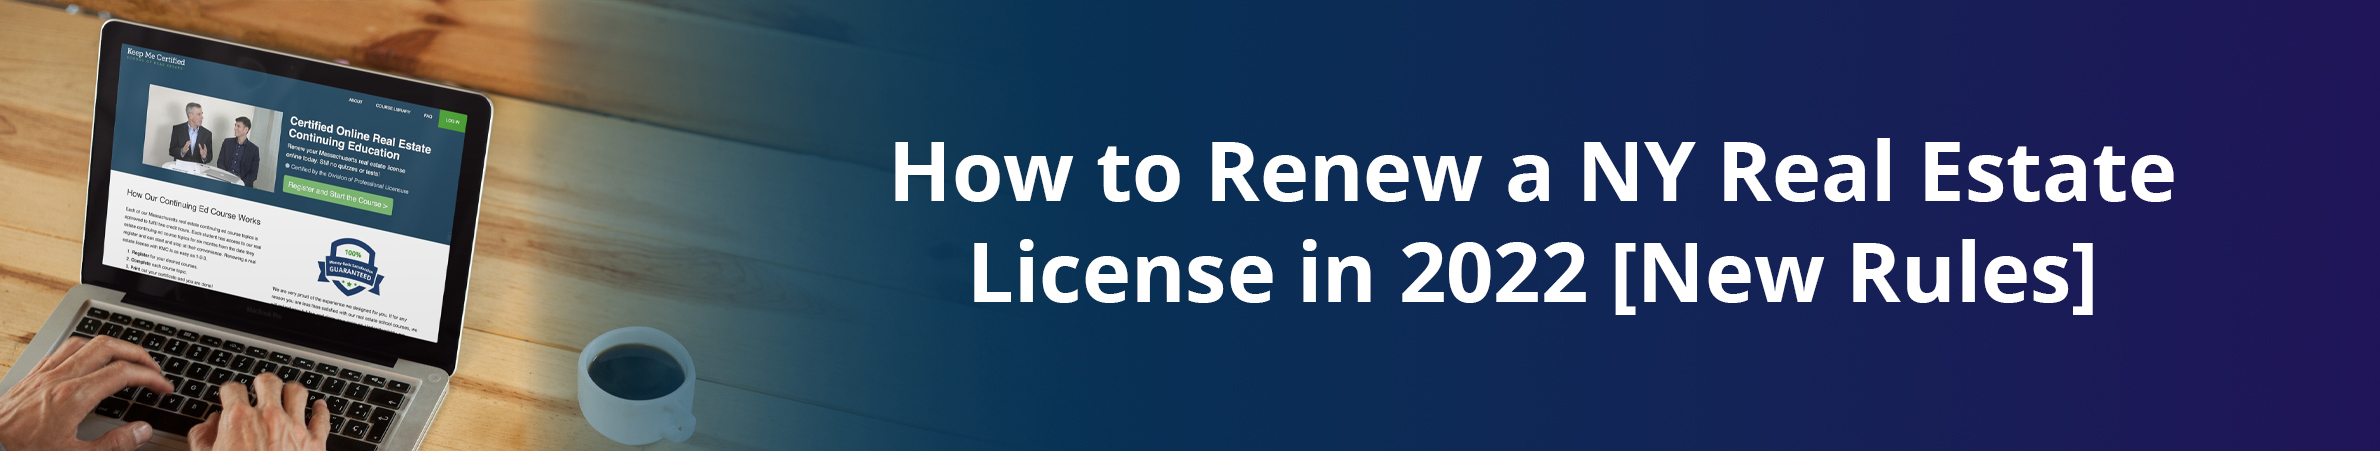 New NY real estate license renewal rules